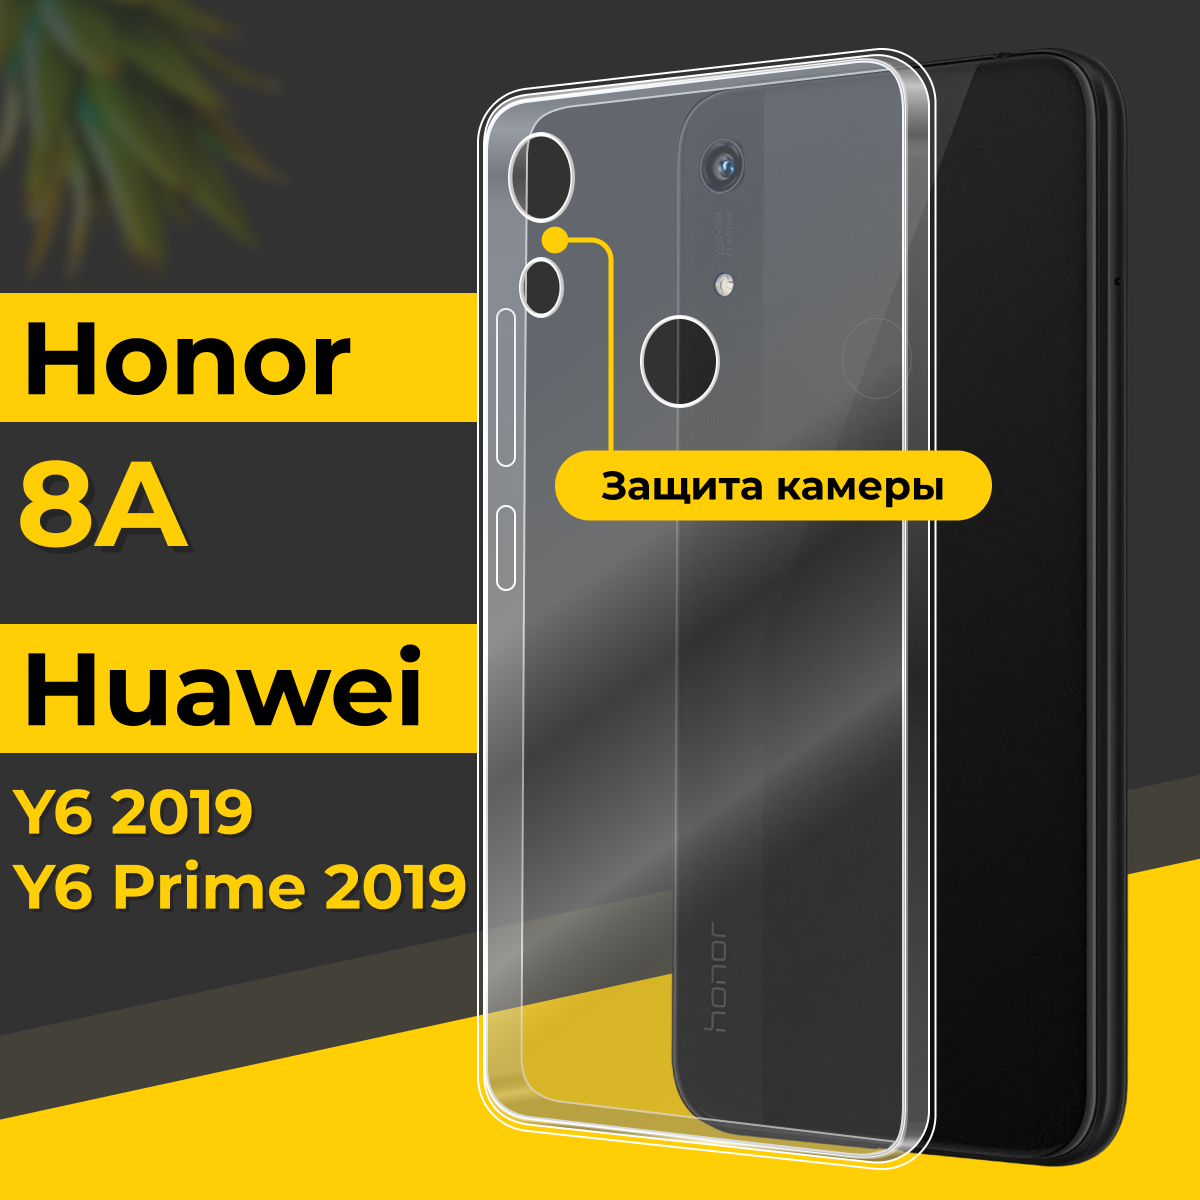 Тонкий силиконовый чехол для смартфона Honor 8A, Huawei Y6 и Y6 Prime 2019 / Чехол на Хонор 8А, Хуавей У6, У6 Прайм 2019 с защитой камеры / Прозрачный